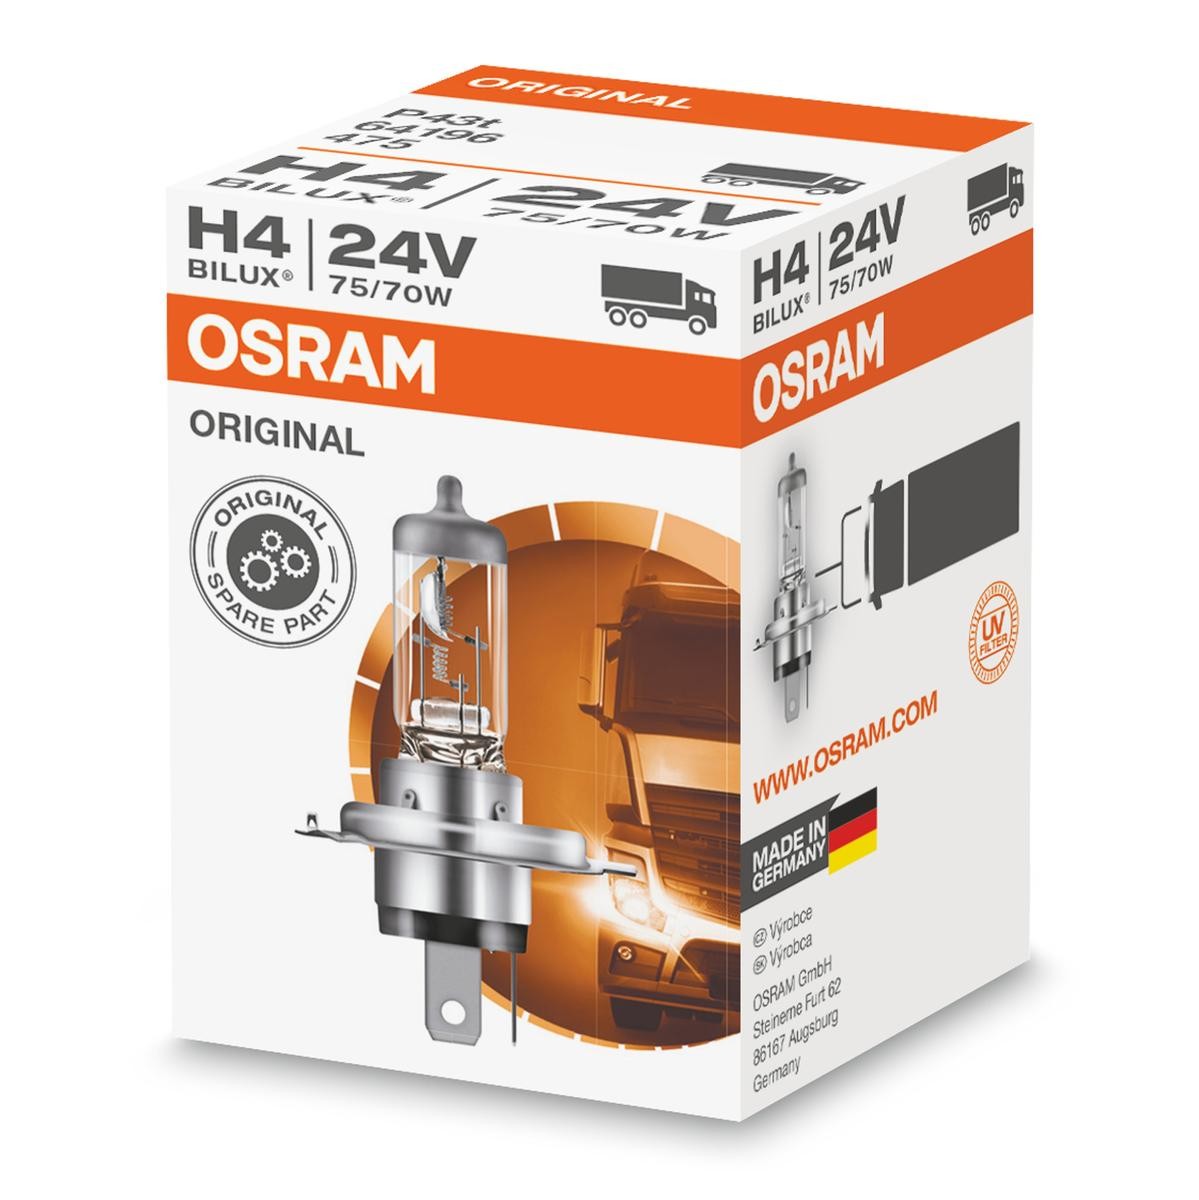 OSRAM ORIGINAL LINE 64196 Bulb, spotlight H4 24V 75/70W P43t, 3200K, Halogen